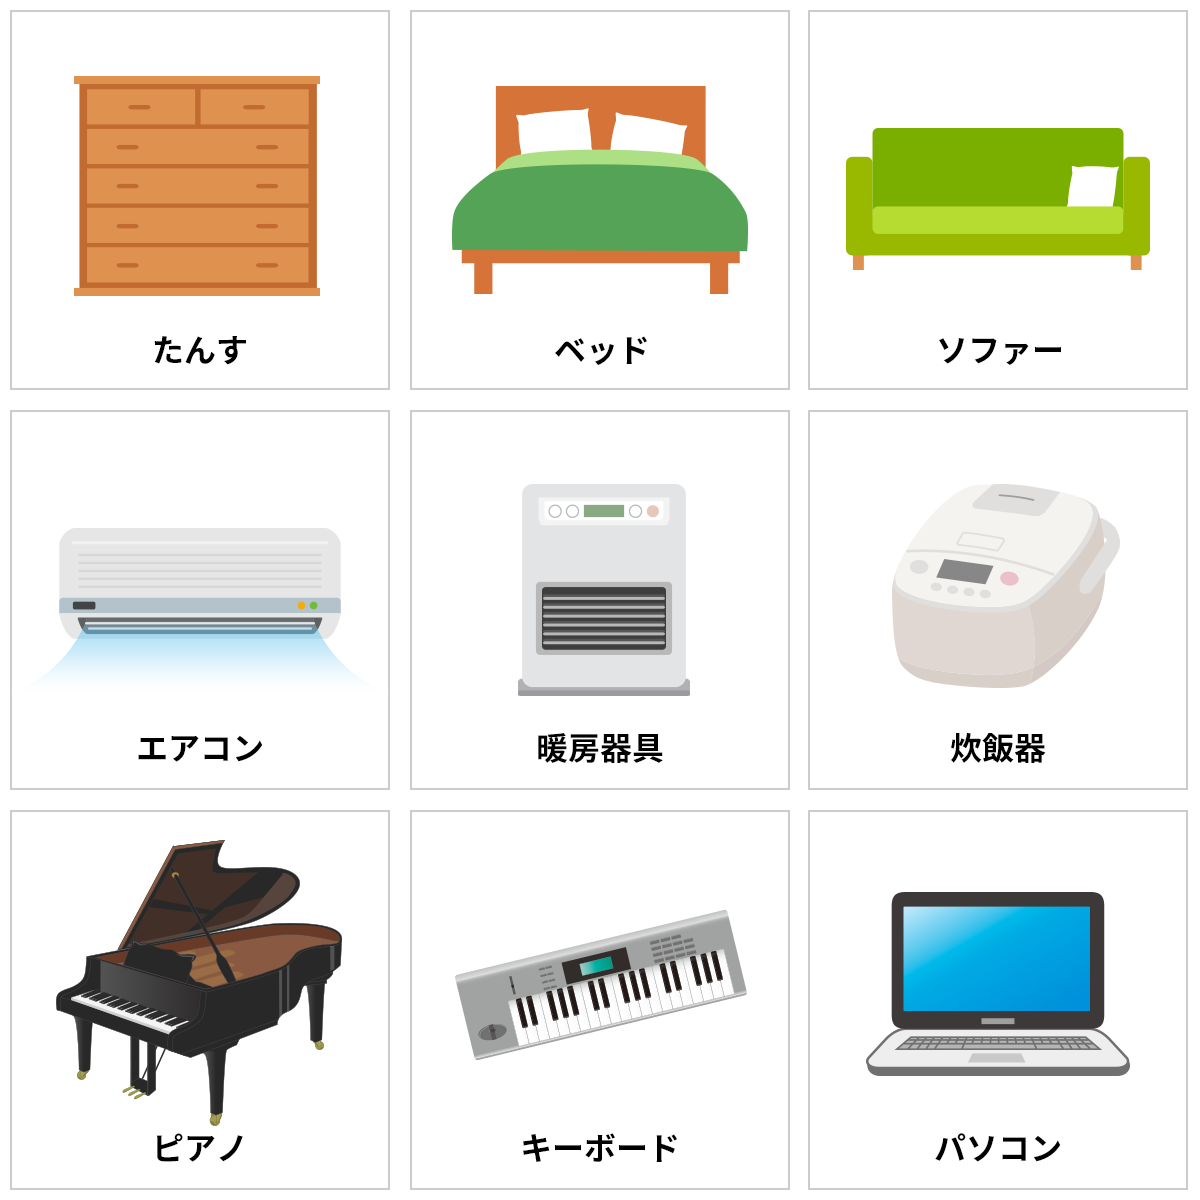 たんす,ベッド,ソファー,エアコン,暖房器具,炊飯器,ピアノ,キーボード,パソコン